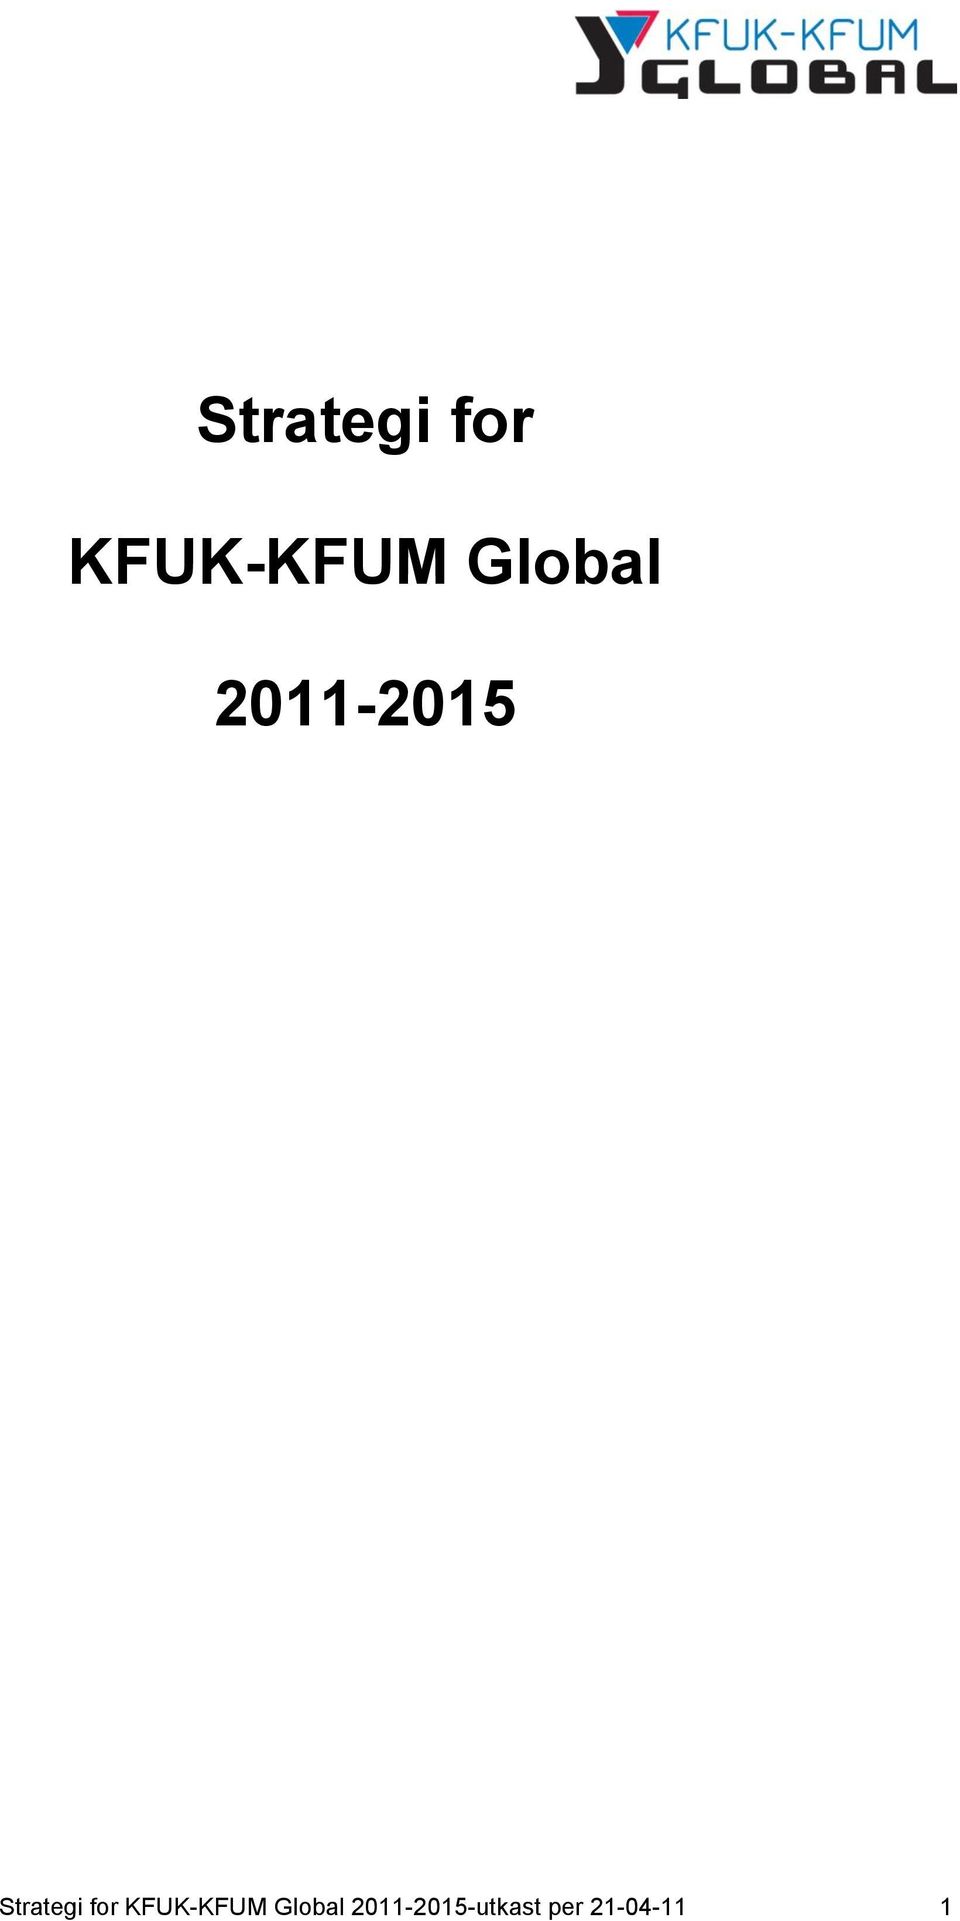 2011-2015-utkast per